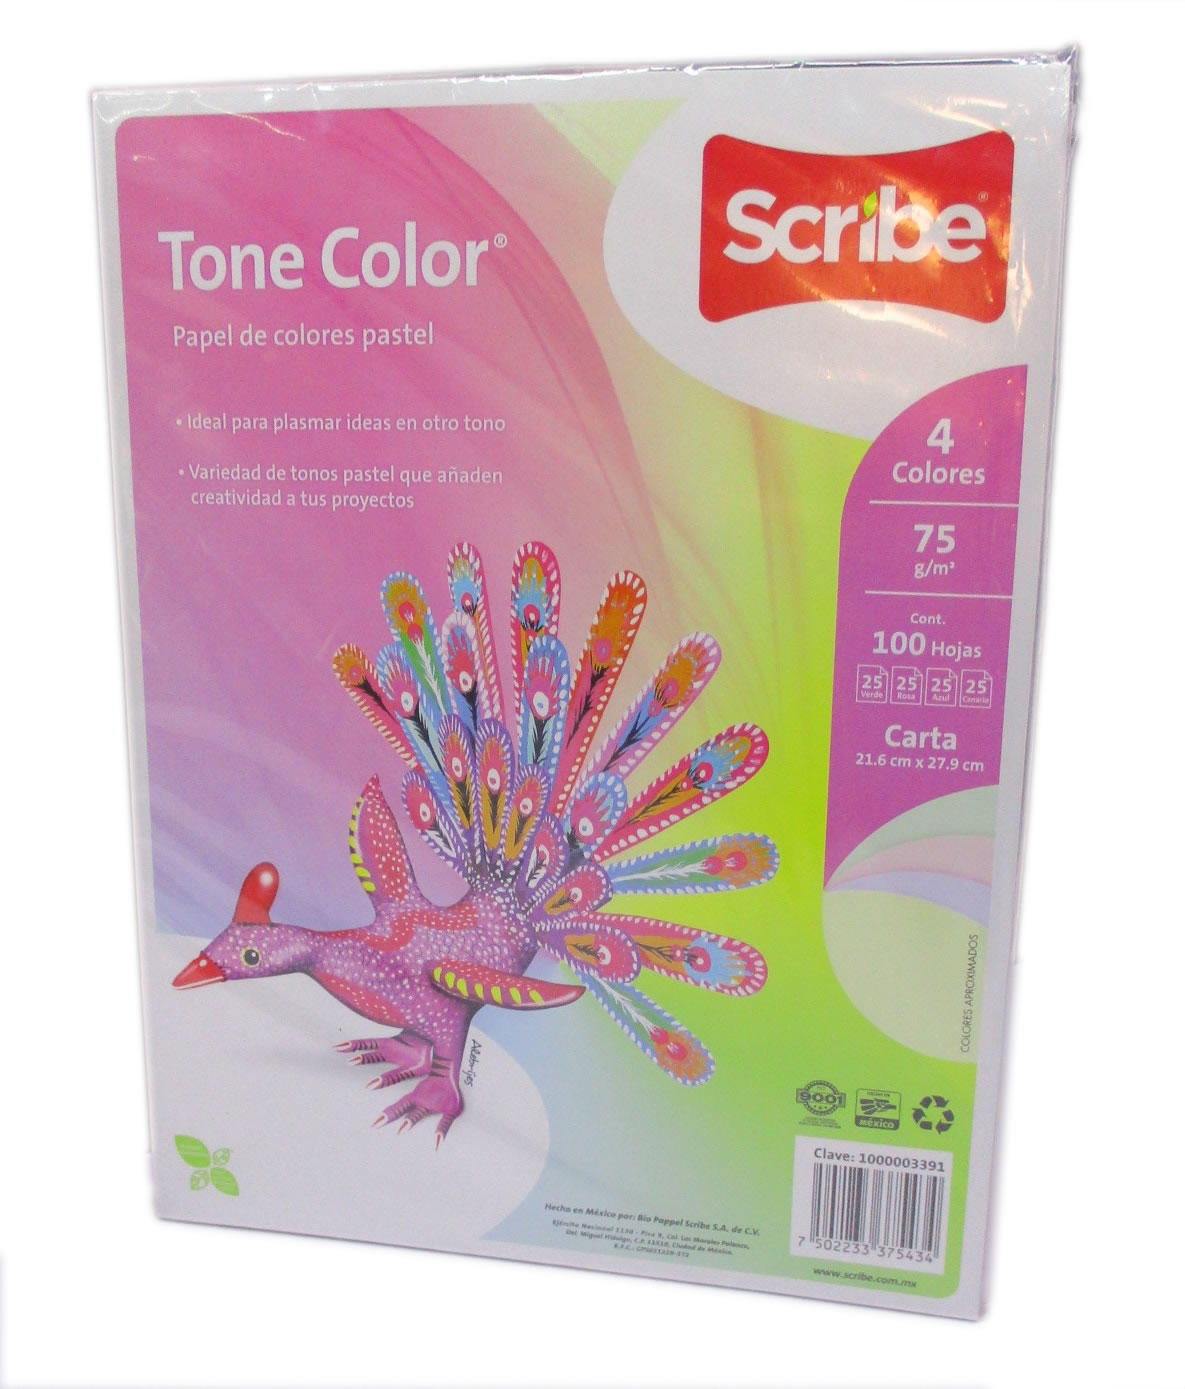 Tone color scribe 100 hojas mix Papel de color mix pastel 75g paquete de 100 hojas. Scribe tone color. Cumple: NOM-050-DCFI-2004 y NOM-144 - SCRIBE TONE COLOR